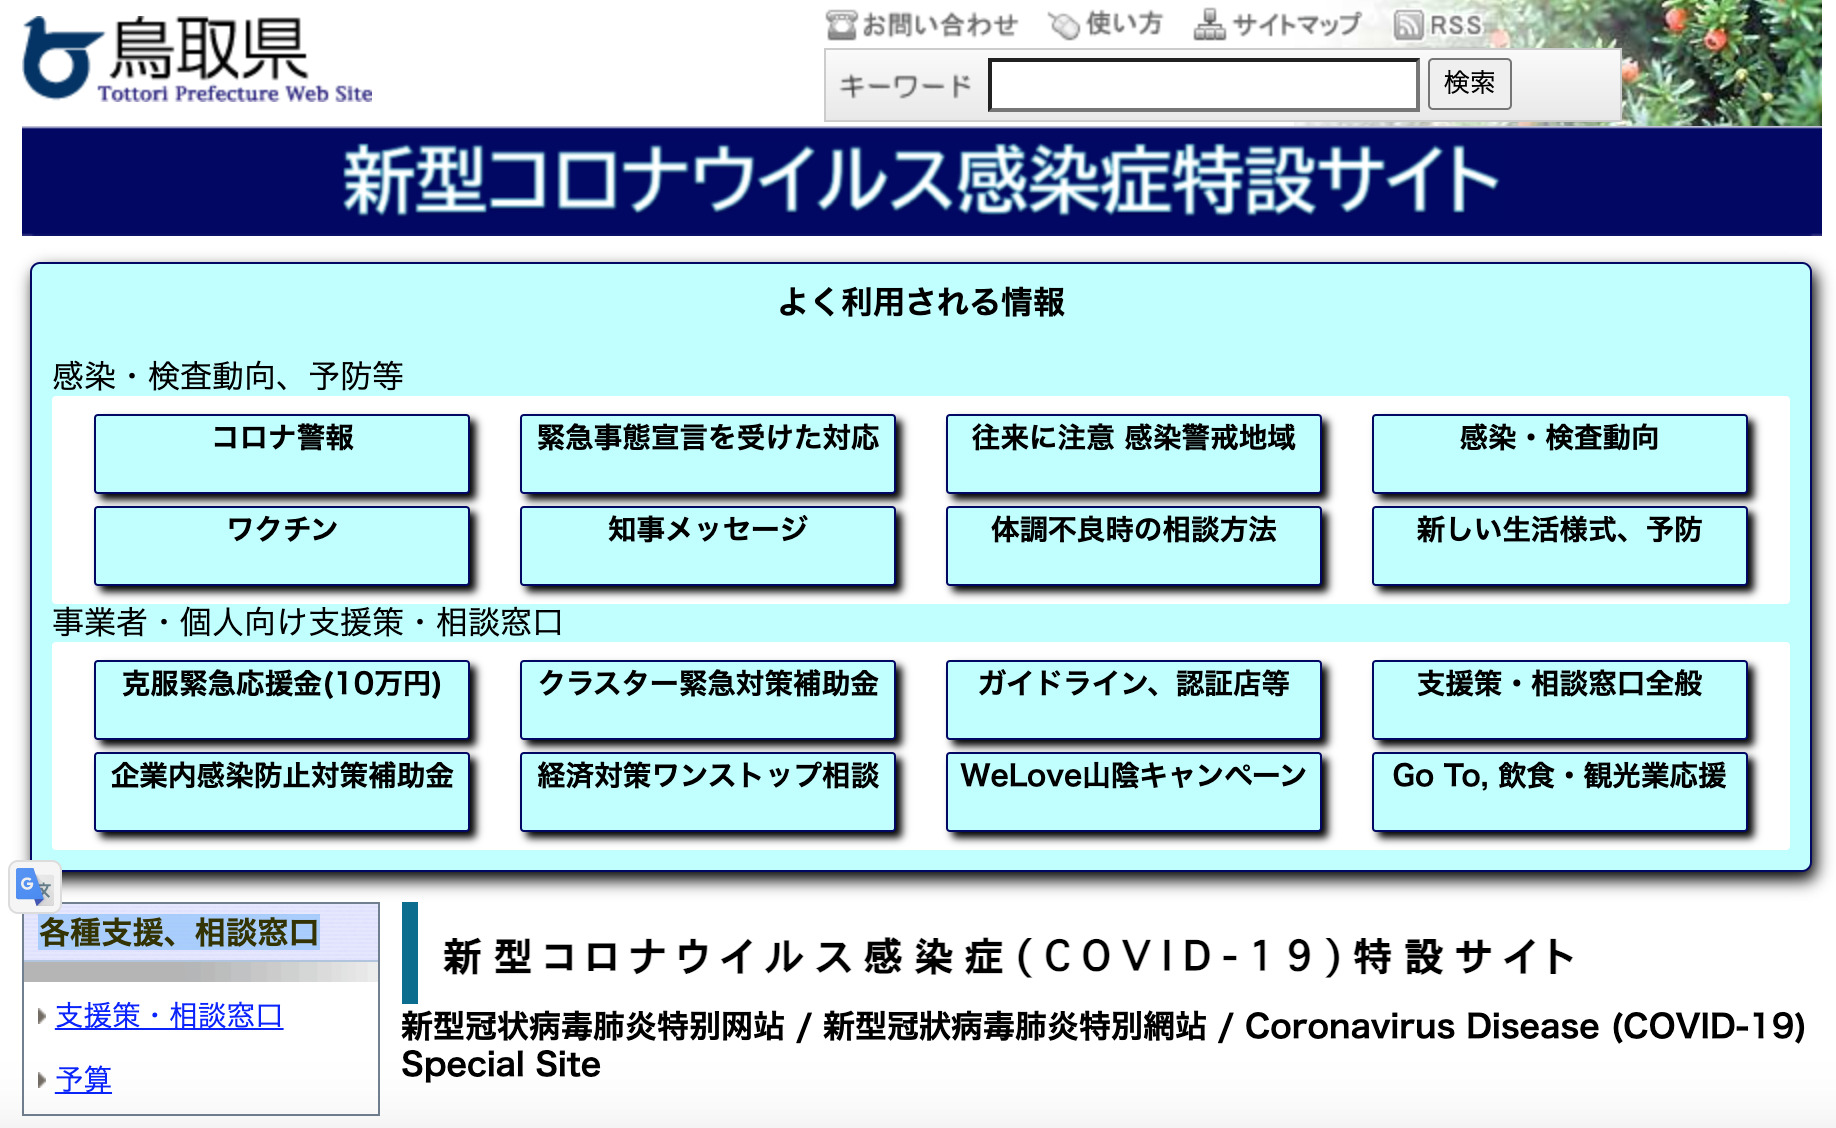 鳥取県の新型コロナウイルス感染症への対応状況